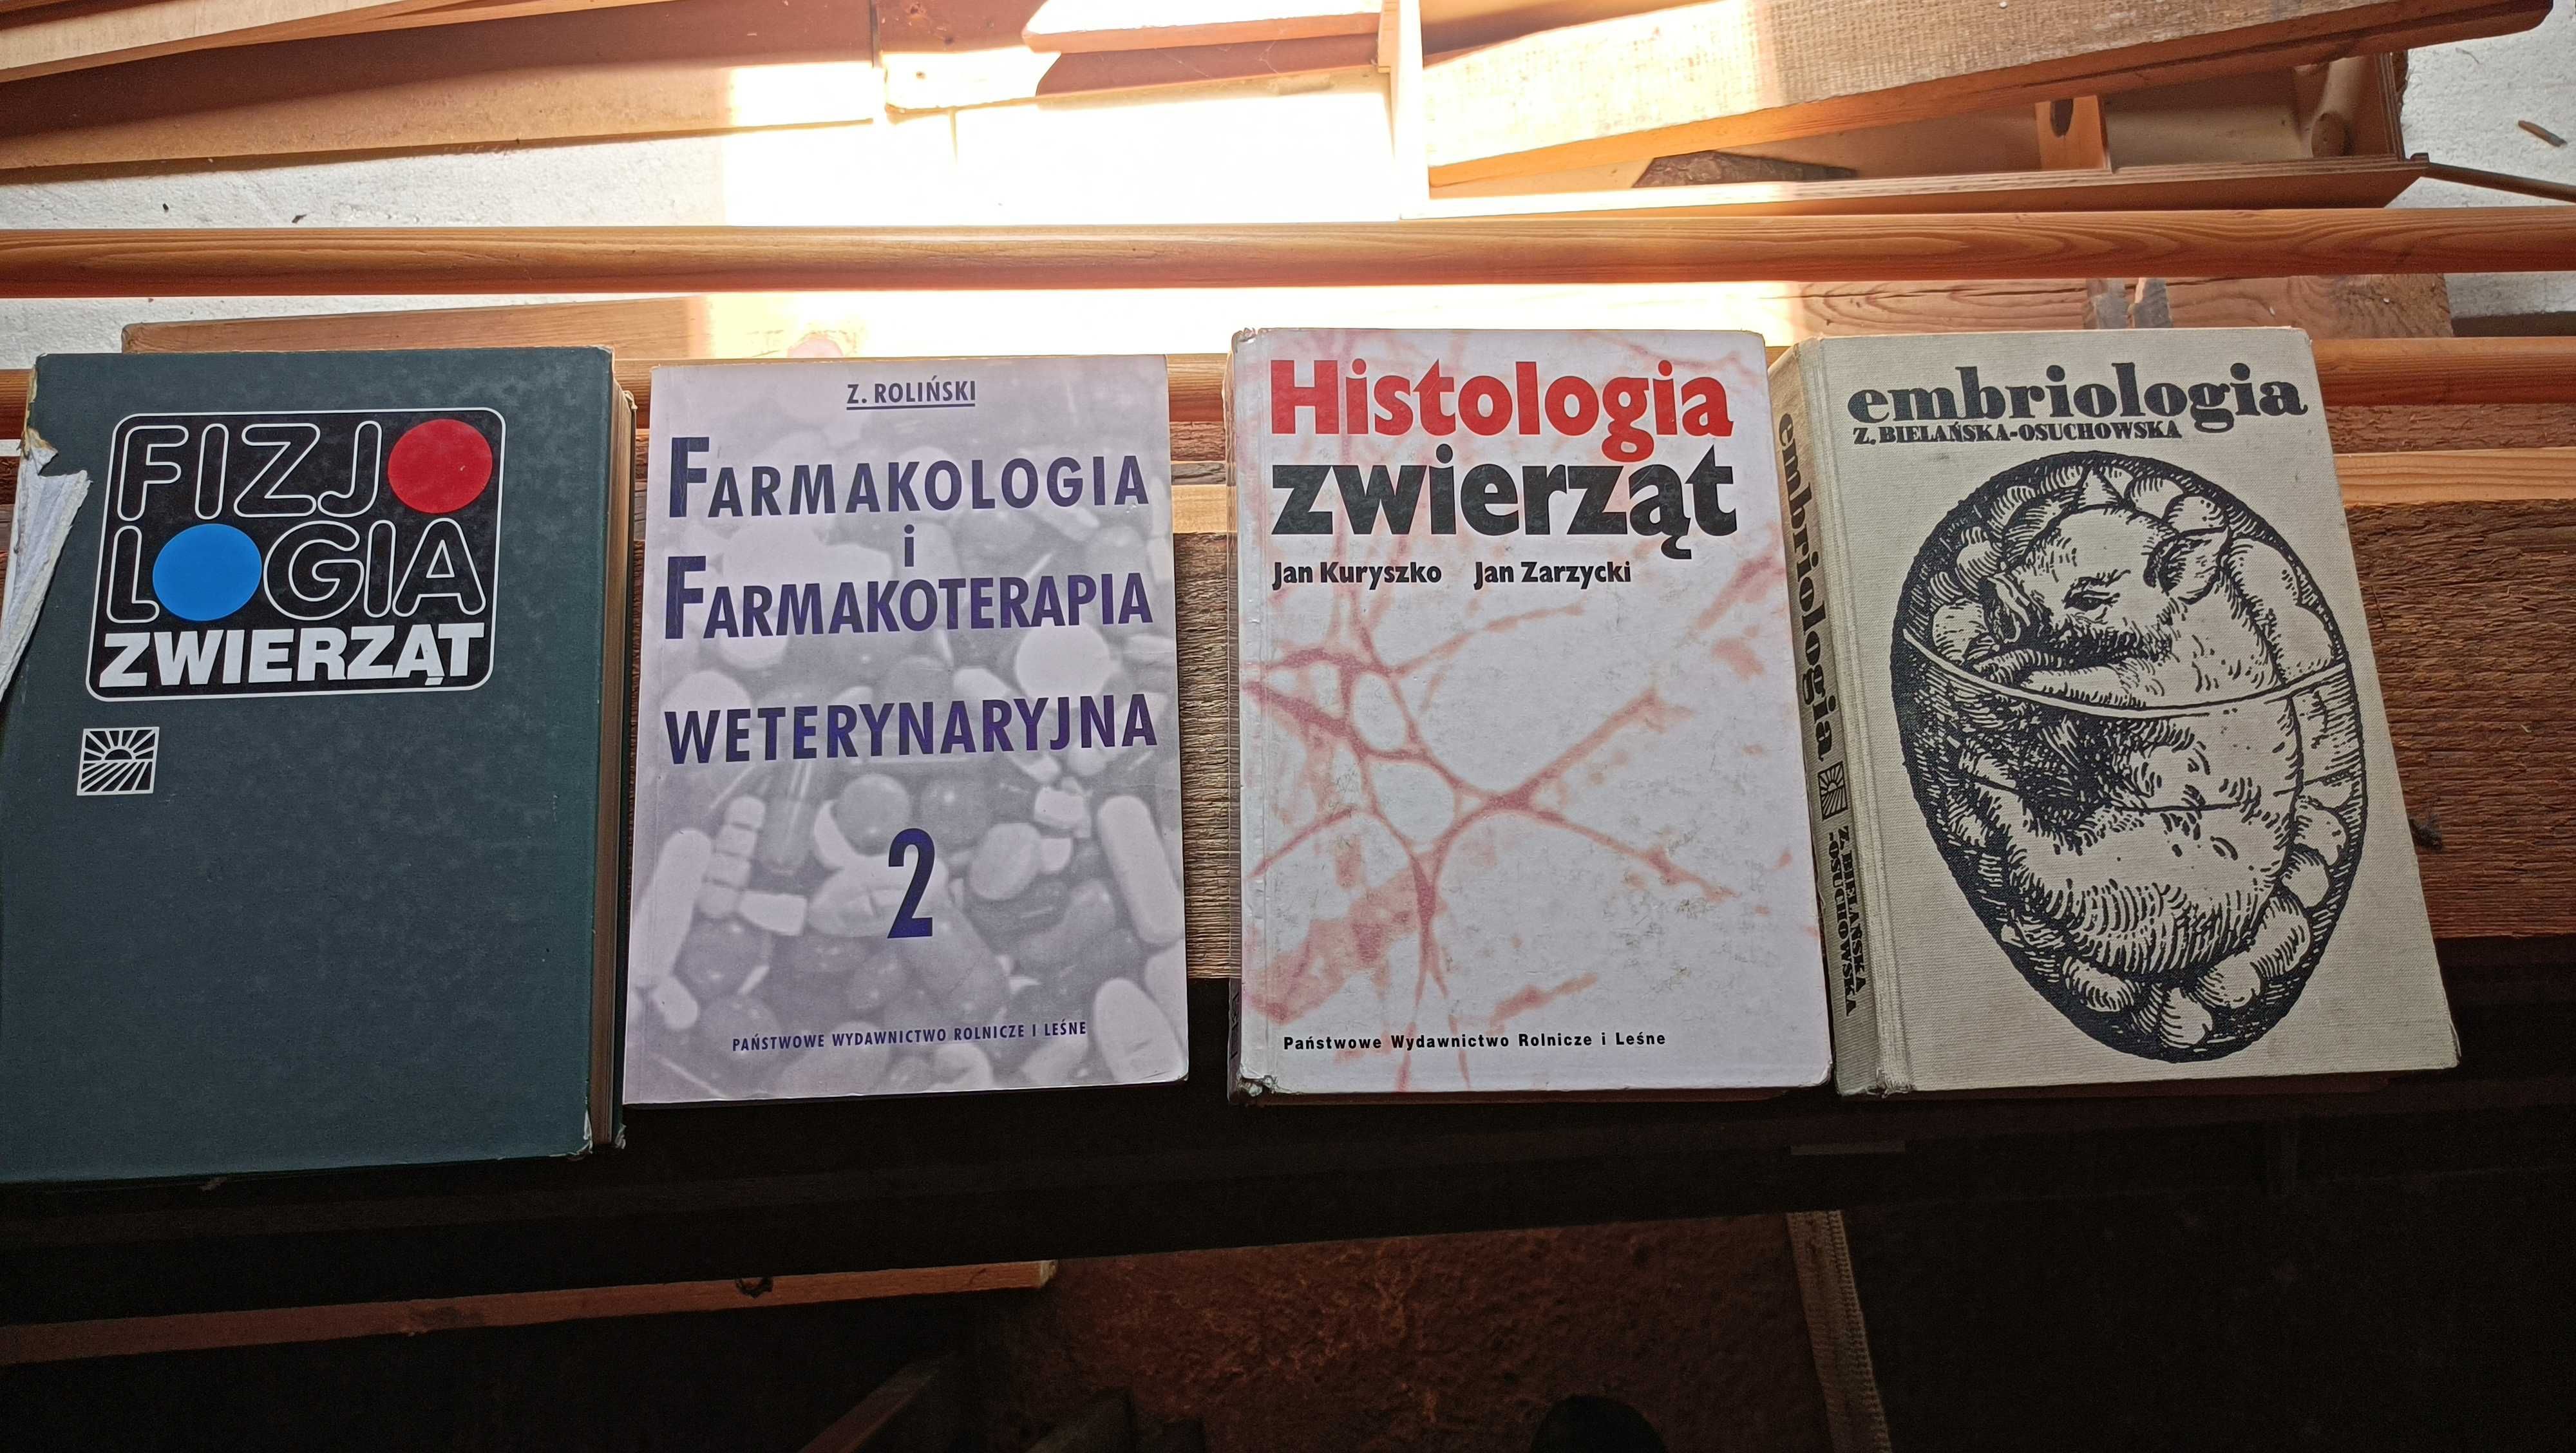 Podręczniki akademickie dla studentów weterynarii, zootechniki.